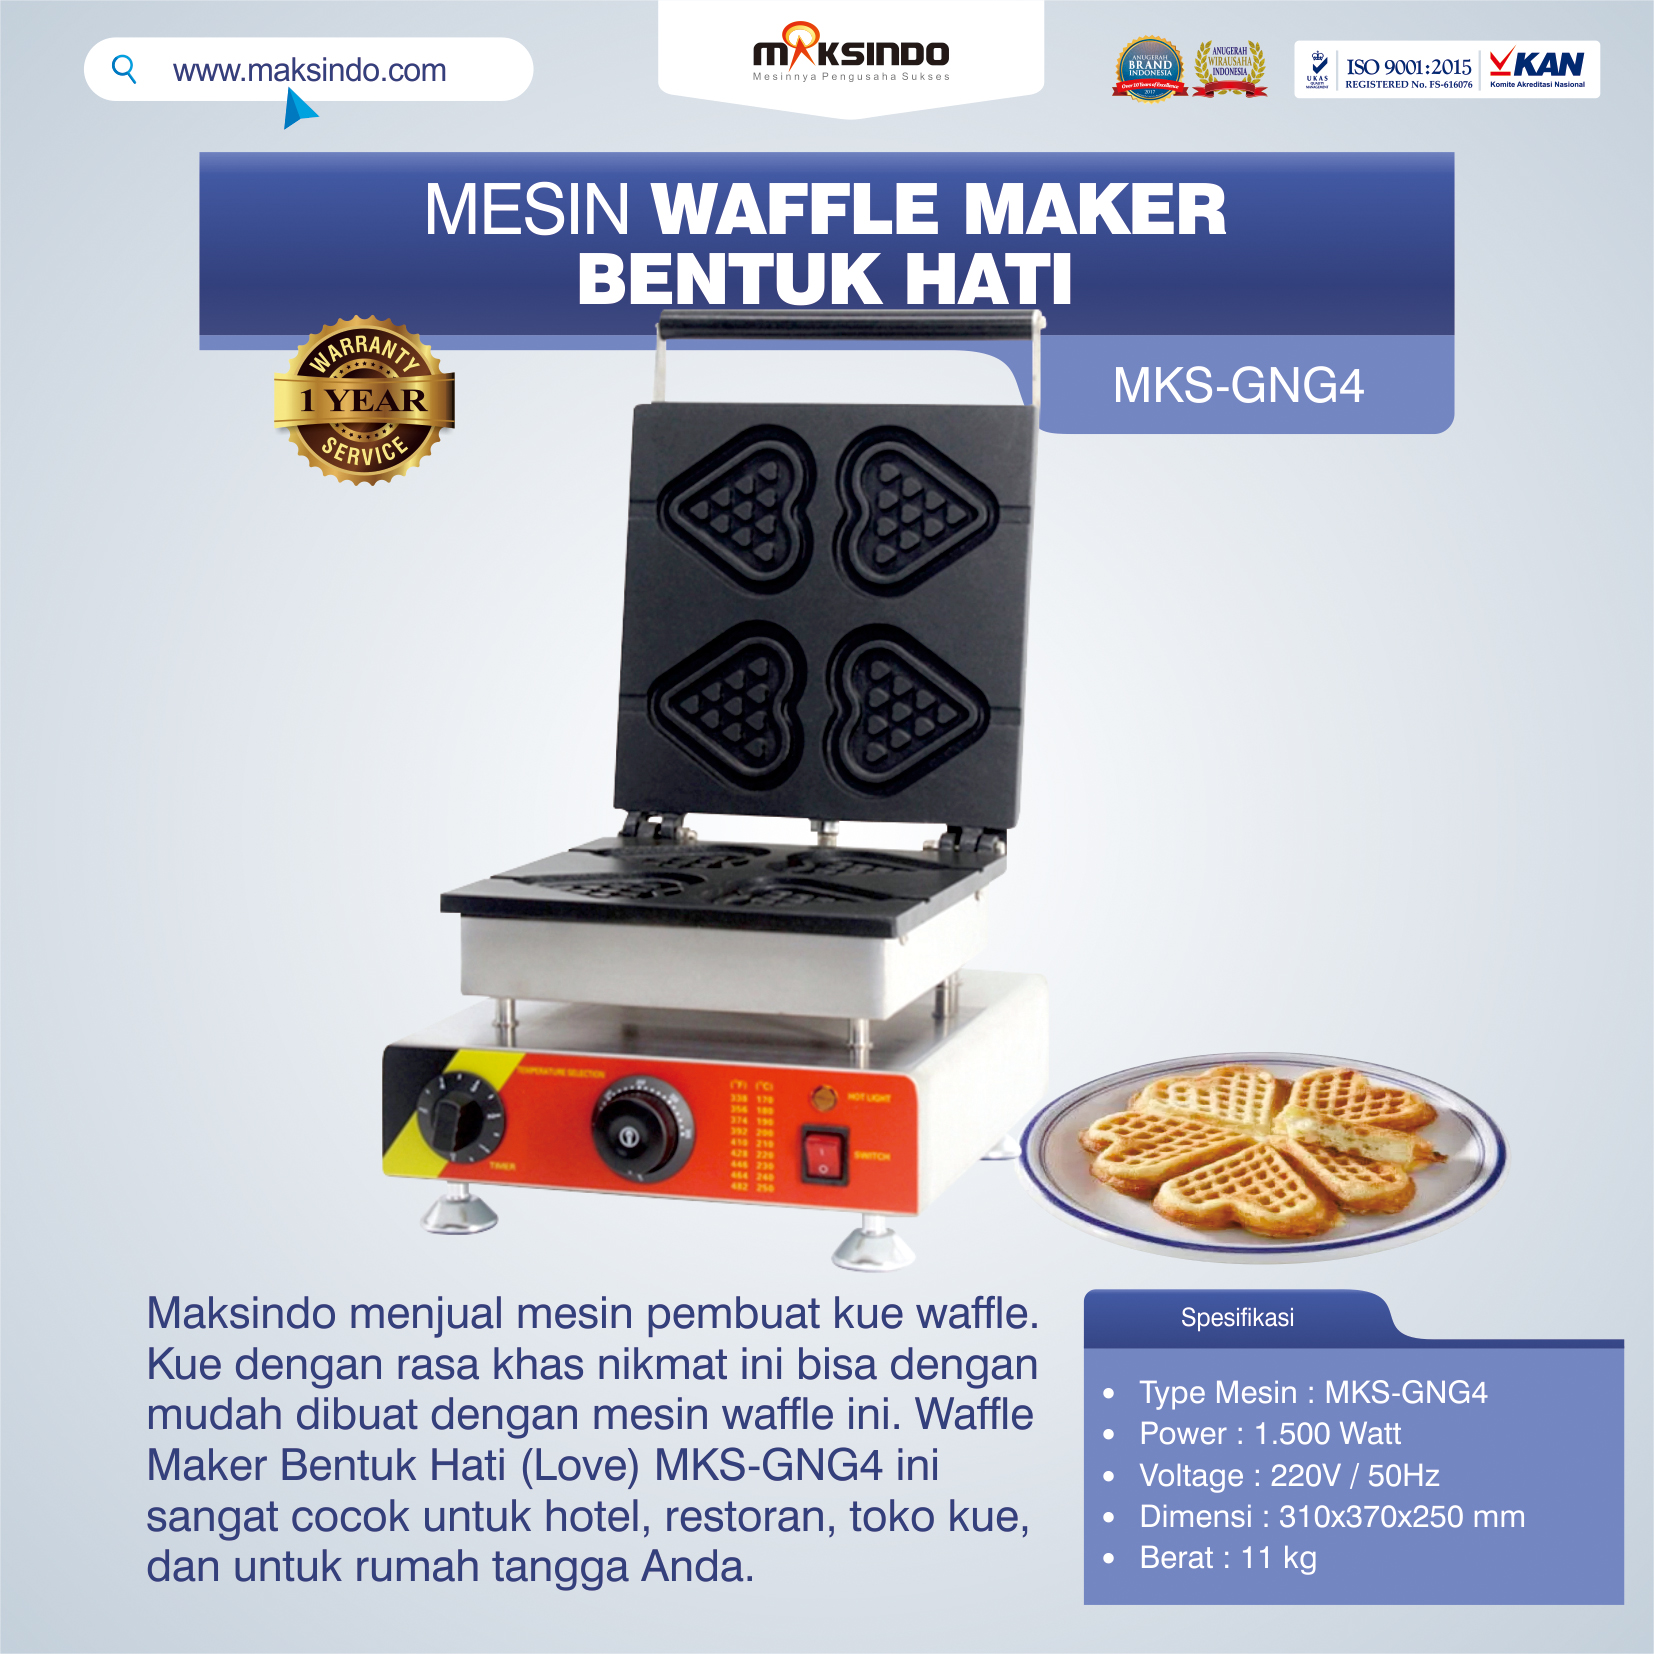 Jual Mesin Waffle Maker Bentuk Hati (Love) MKS-GNG4 di Tangerang